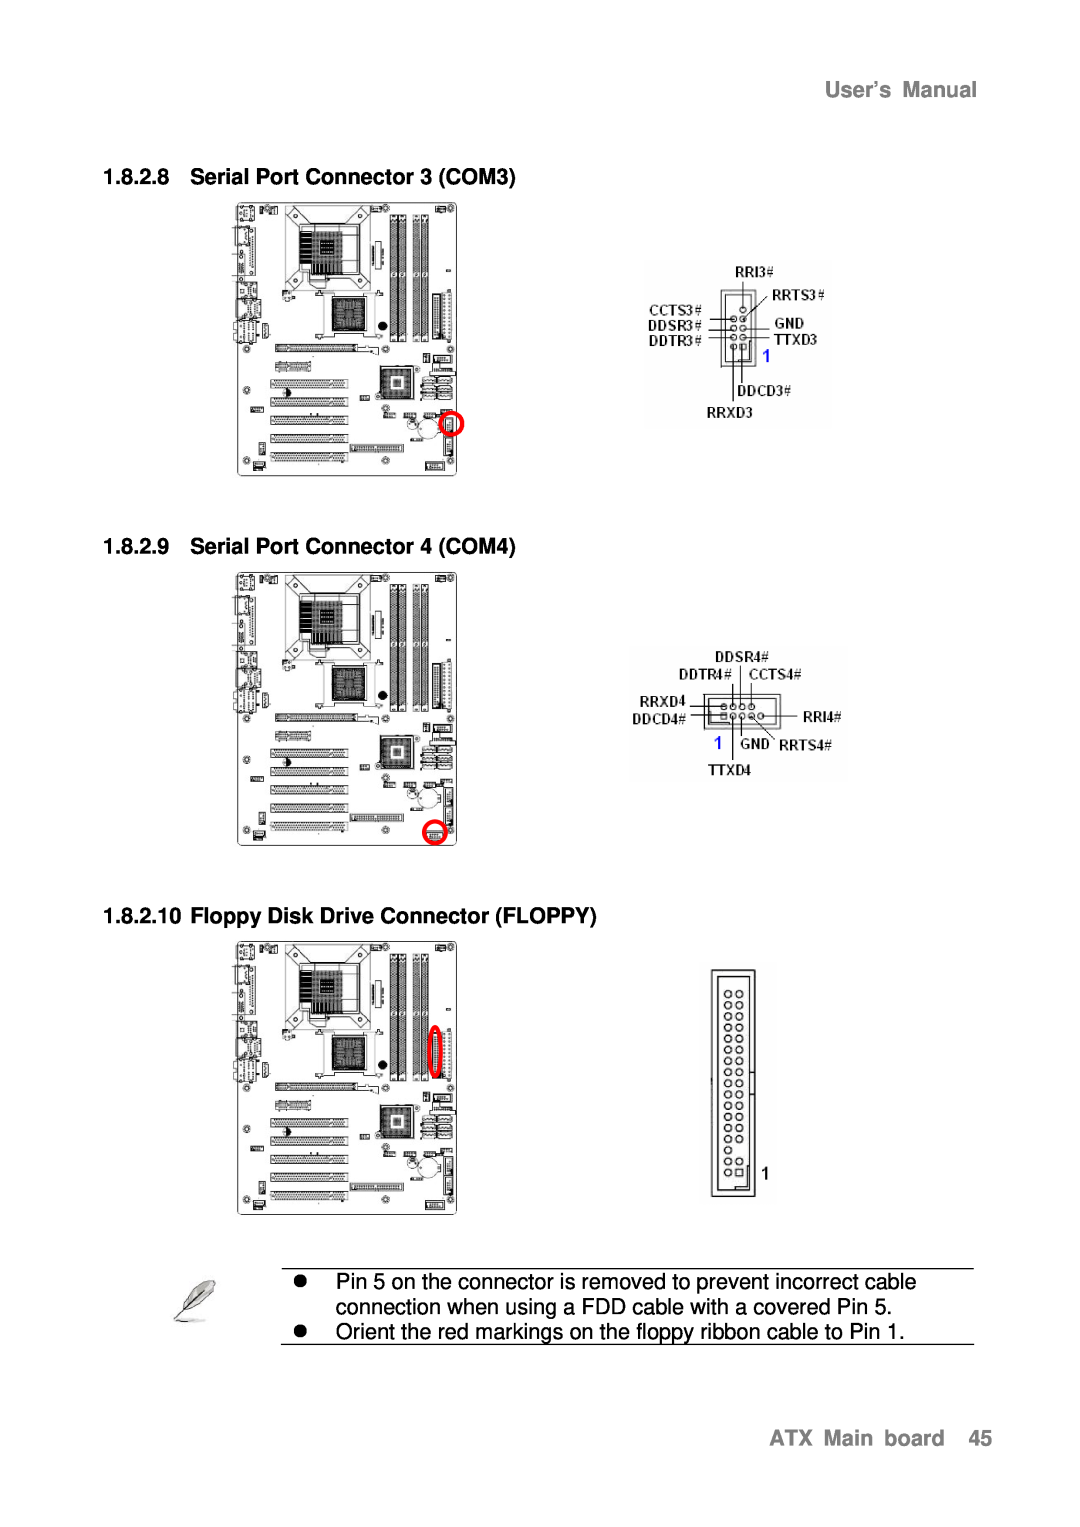 Intel AX965Q Serial Port Connector 3 COM3, Serial Port Connector 4 COM4, Floppy Disk Drive Connector FLOPPY, User’s Manual 